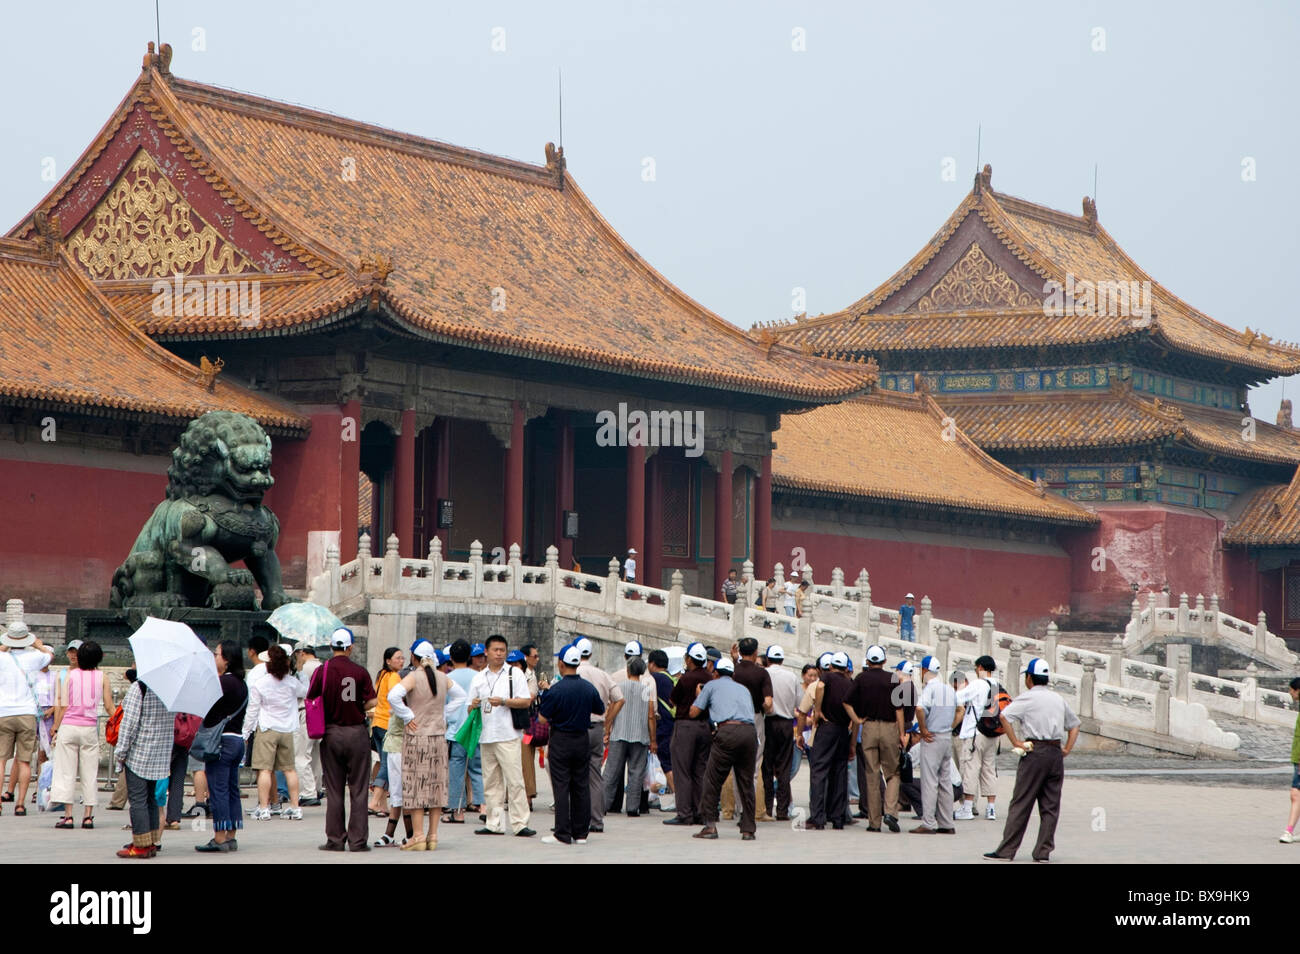 Des foules de stand touristique attendent d'entrer la porte Taihemen sur leur chemin dans la Cité Interdite, Pékin, Chine. Banque D'Images